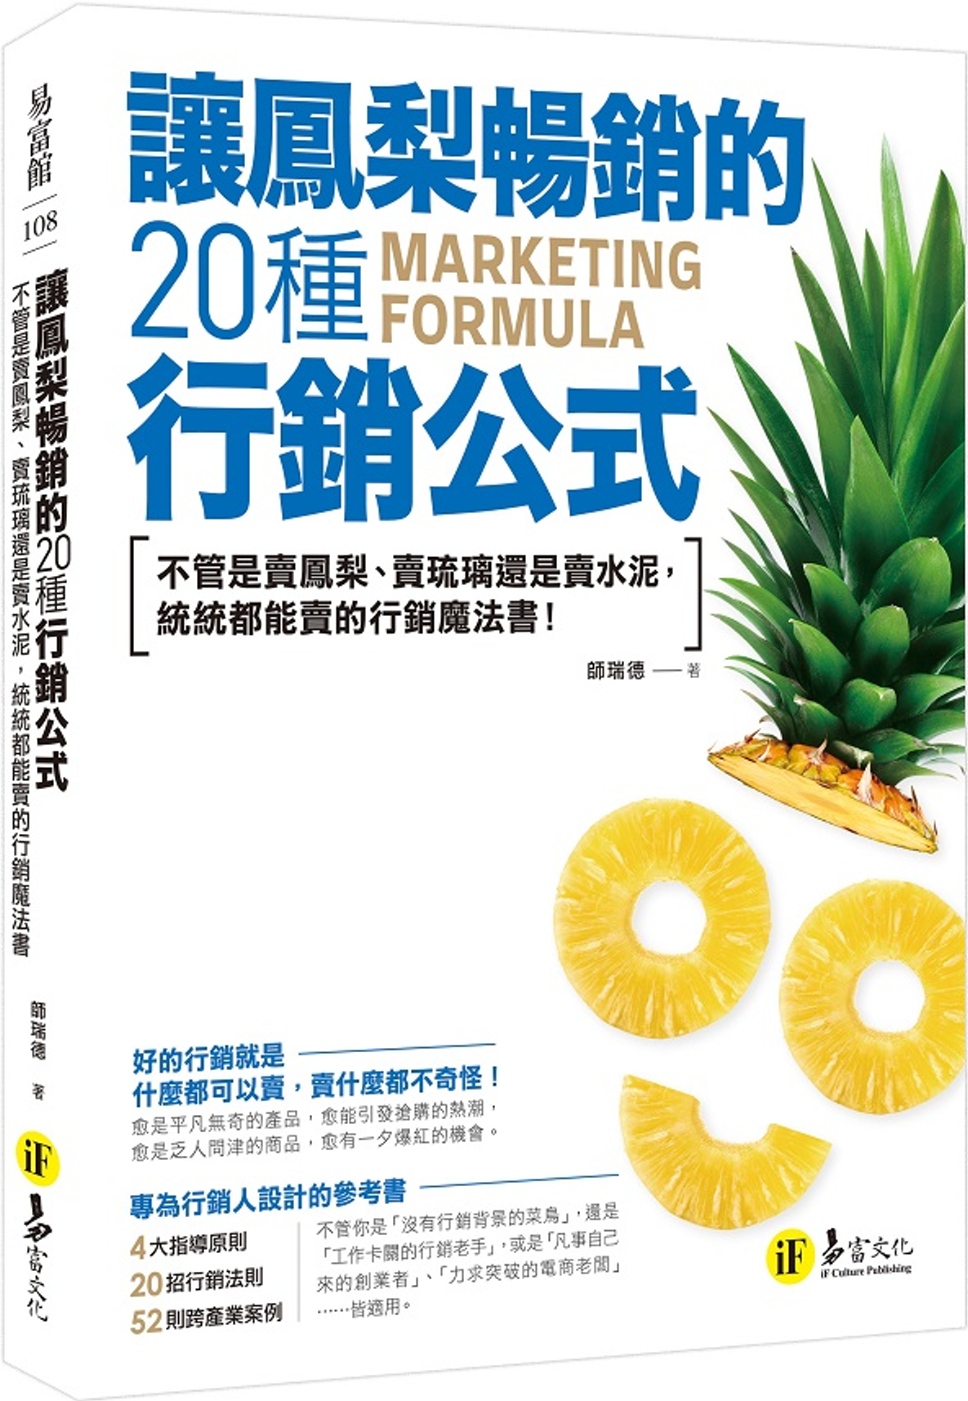 讓鳳梨暢銷的20種行銷公式：不管是賣鳯梨、賣琉璃還是賣水泥，統統都能賣的行銷魔法書